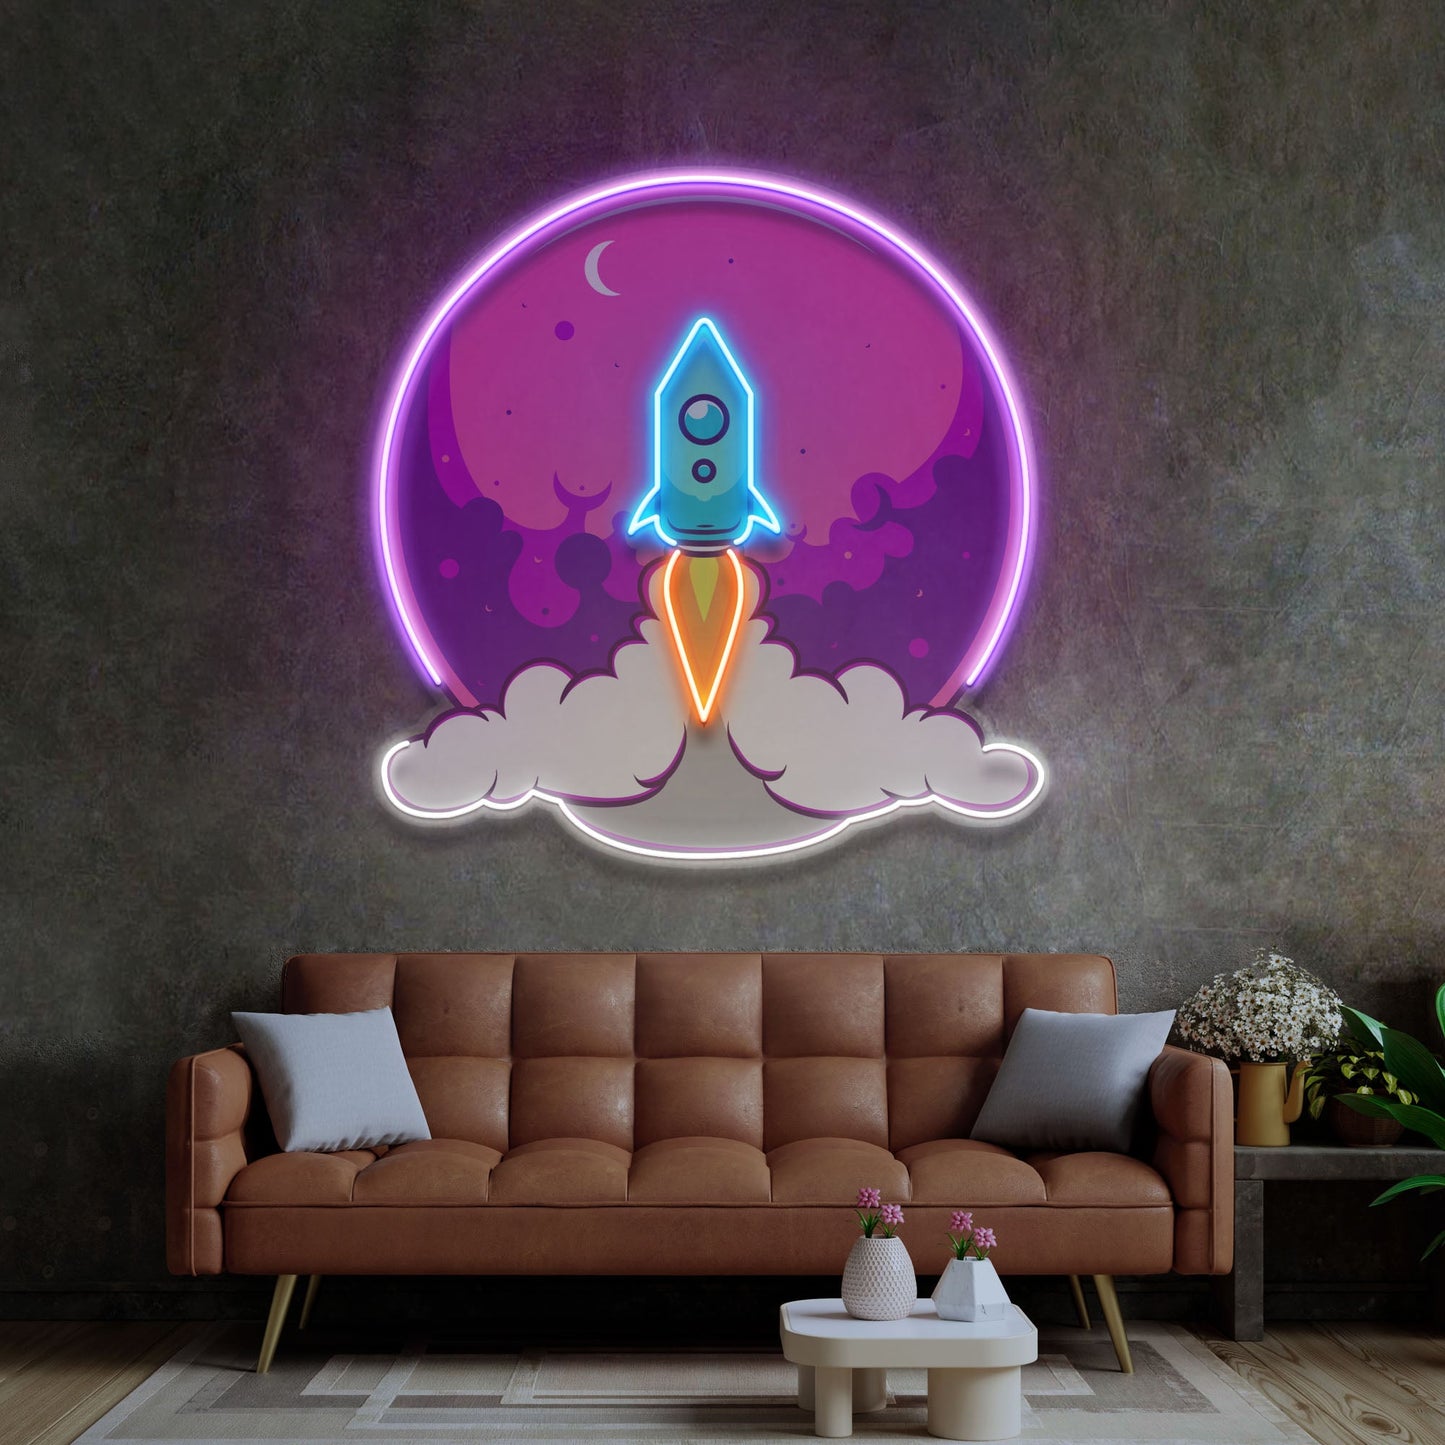 Rocket Launch LED Neon Sign Light Pop Art - Neonzastudio